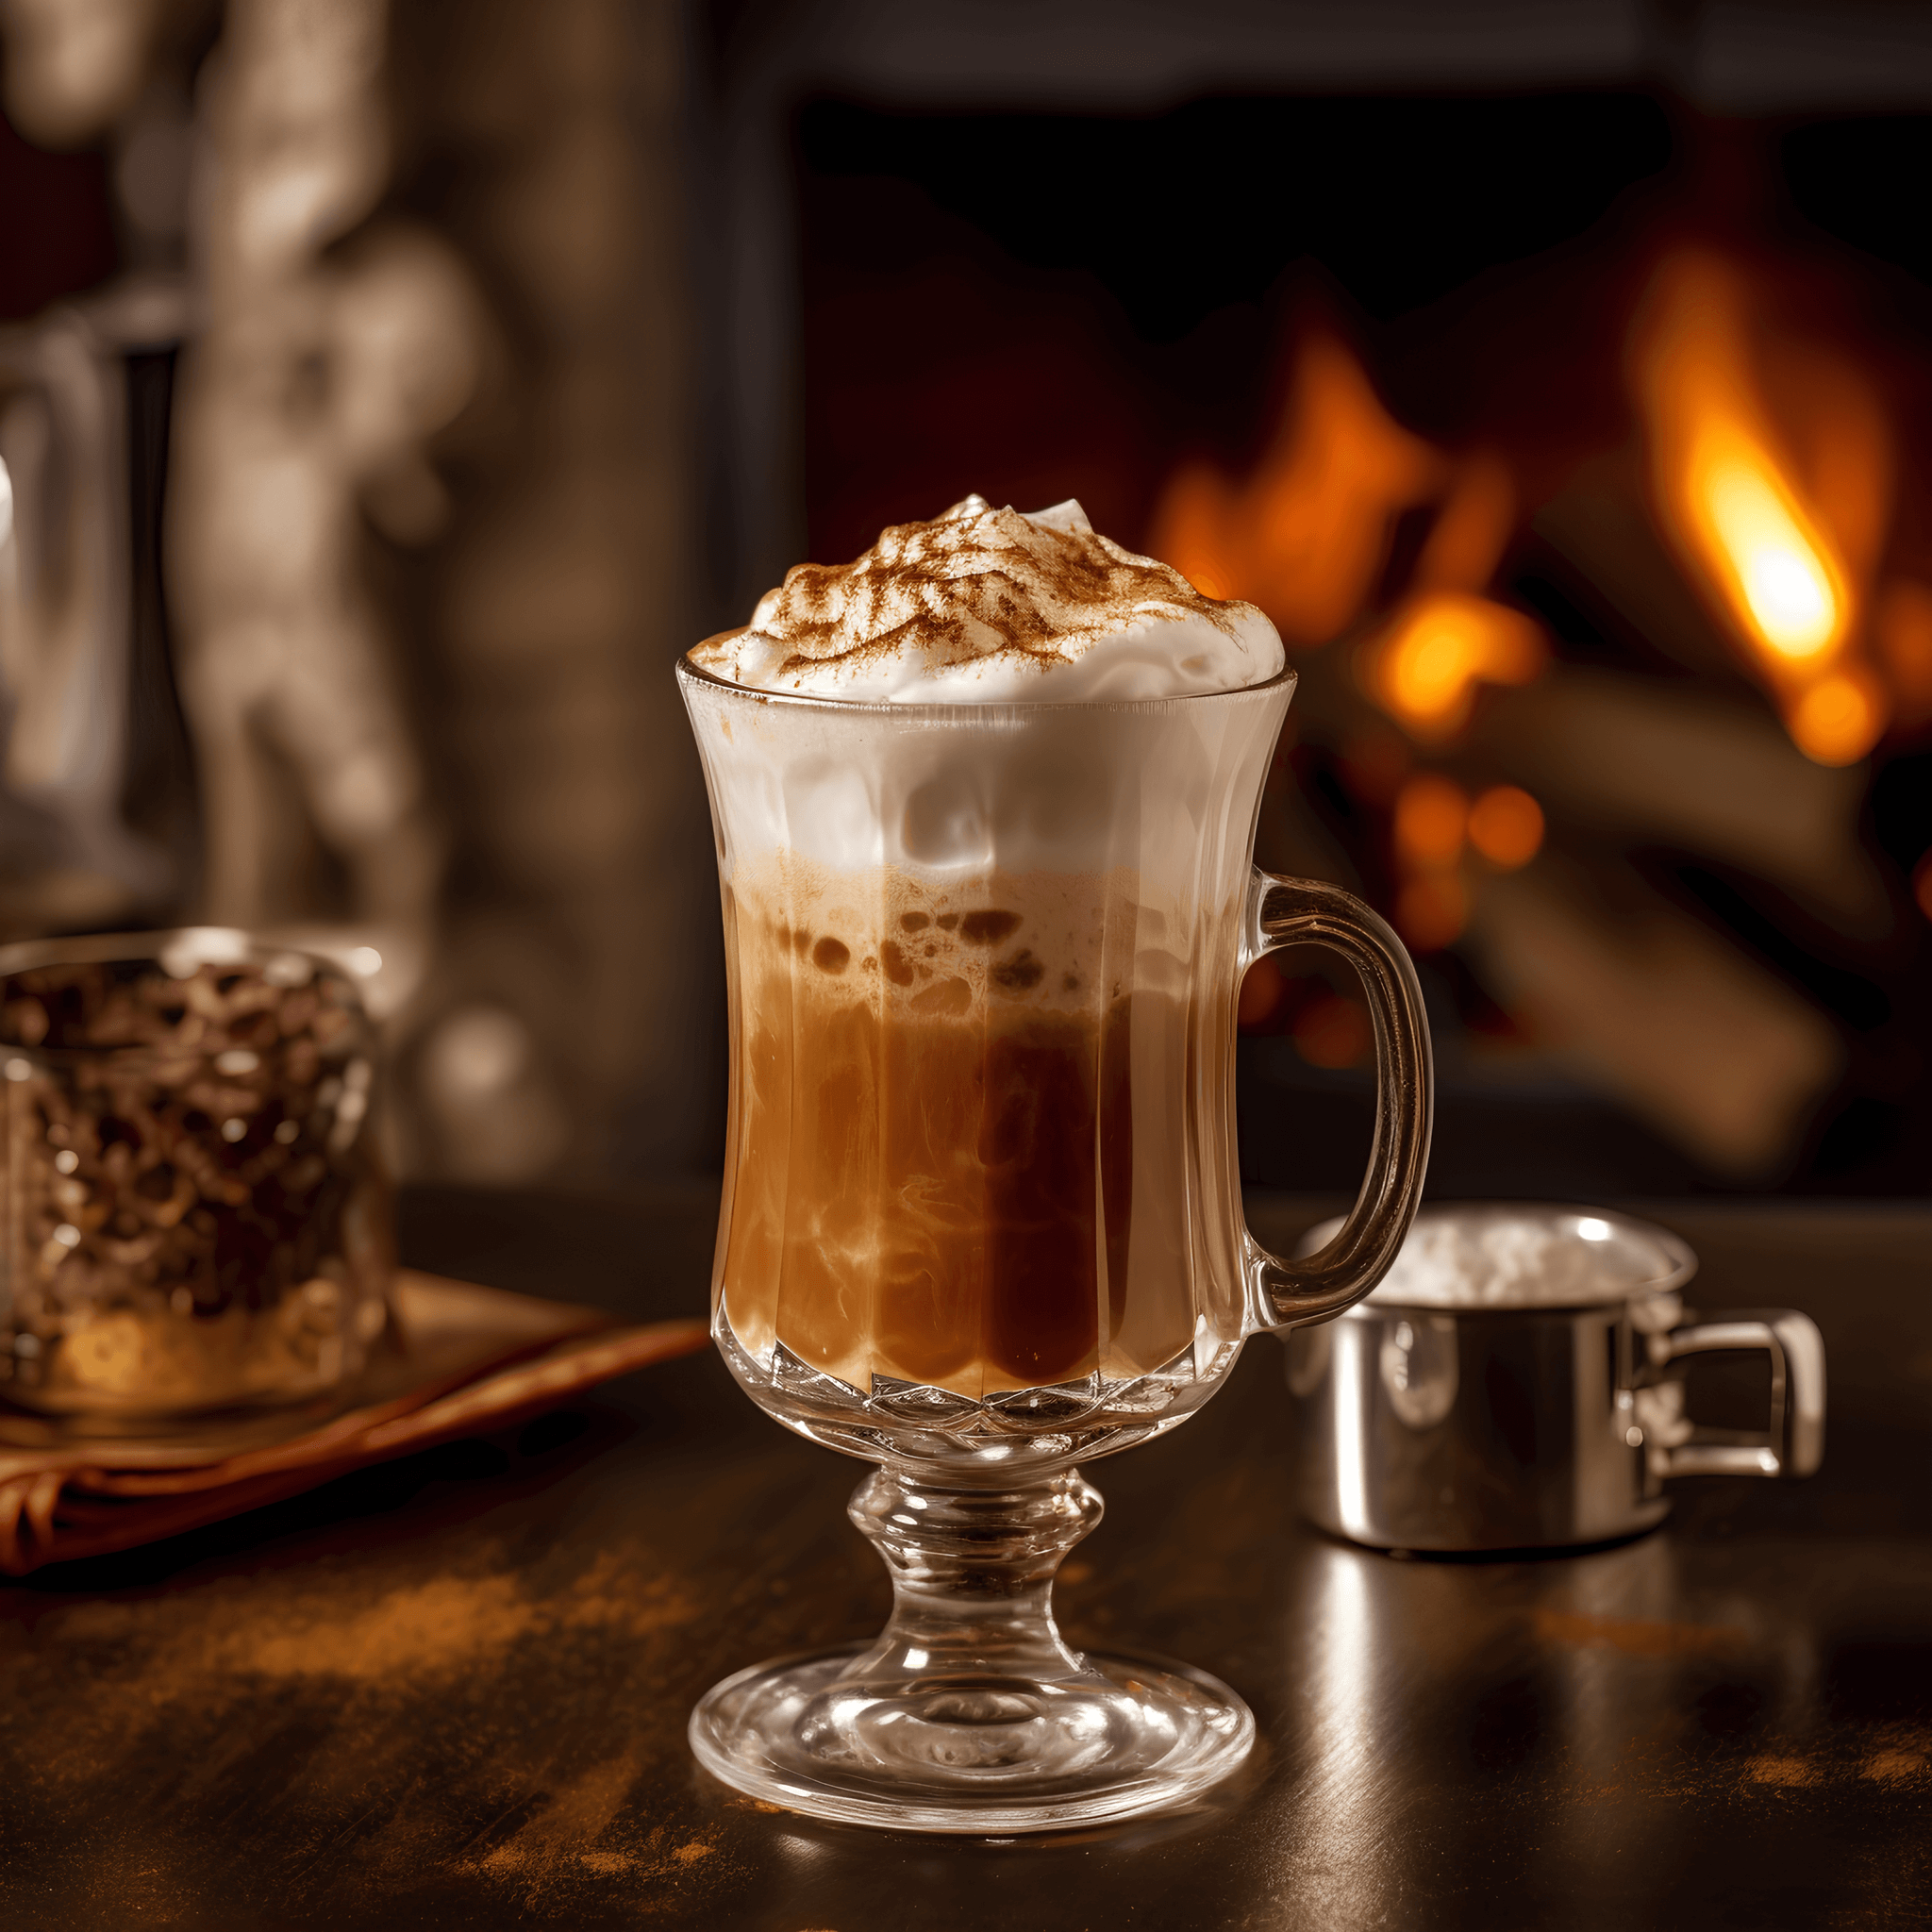 Irish Coffee Cóctel Receta - El Irish Coffee es un cóctel cálido, rico y cremoso con un equilibrio perfecto de café amargo, azúcar dulce y suave whiskey irlandés. La crema batida agrega una textura lujosa y aterciopelada.